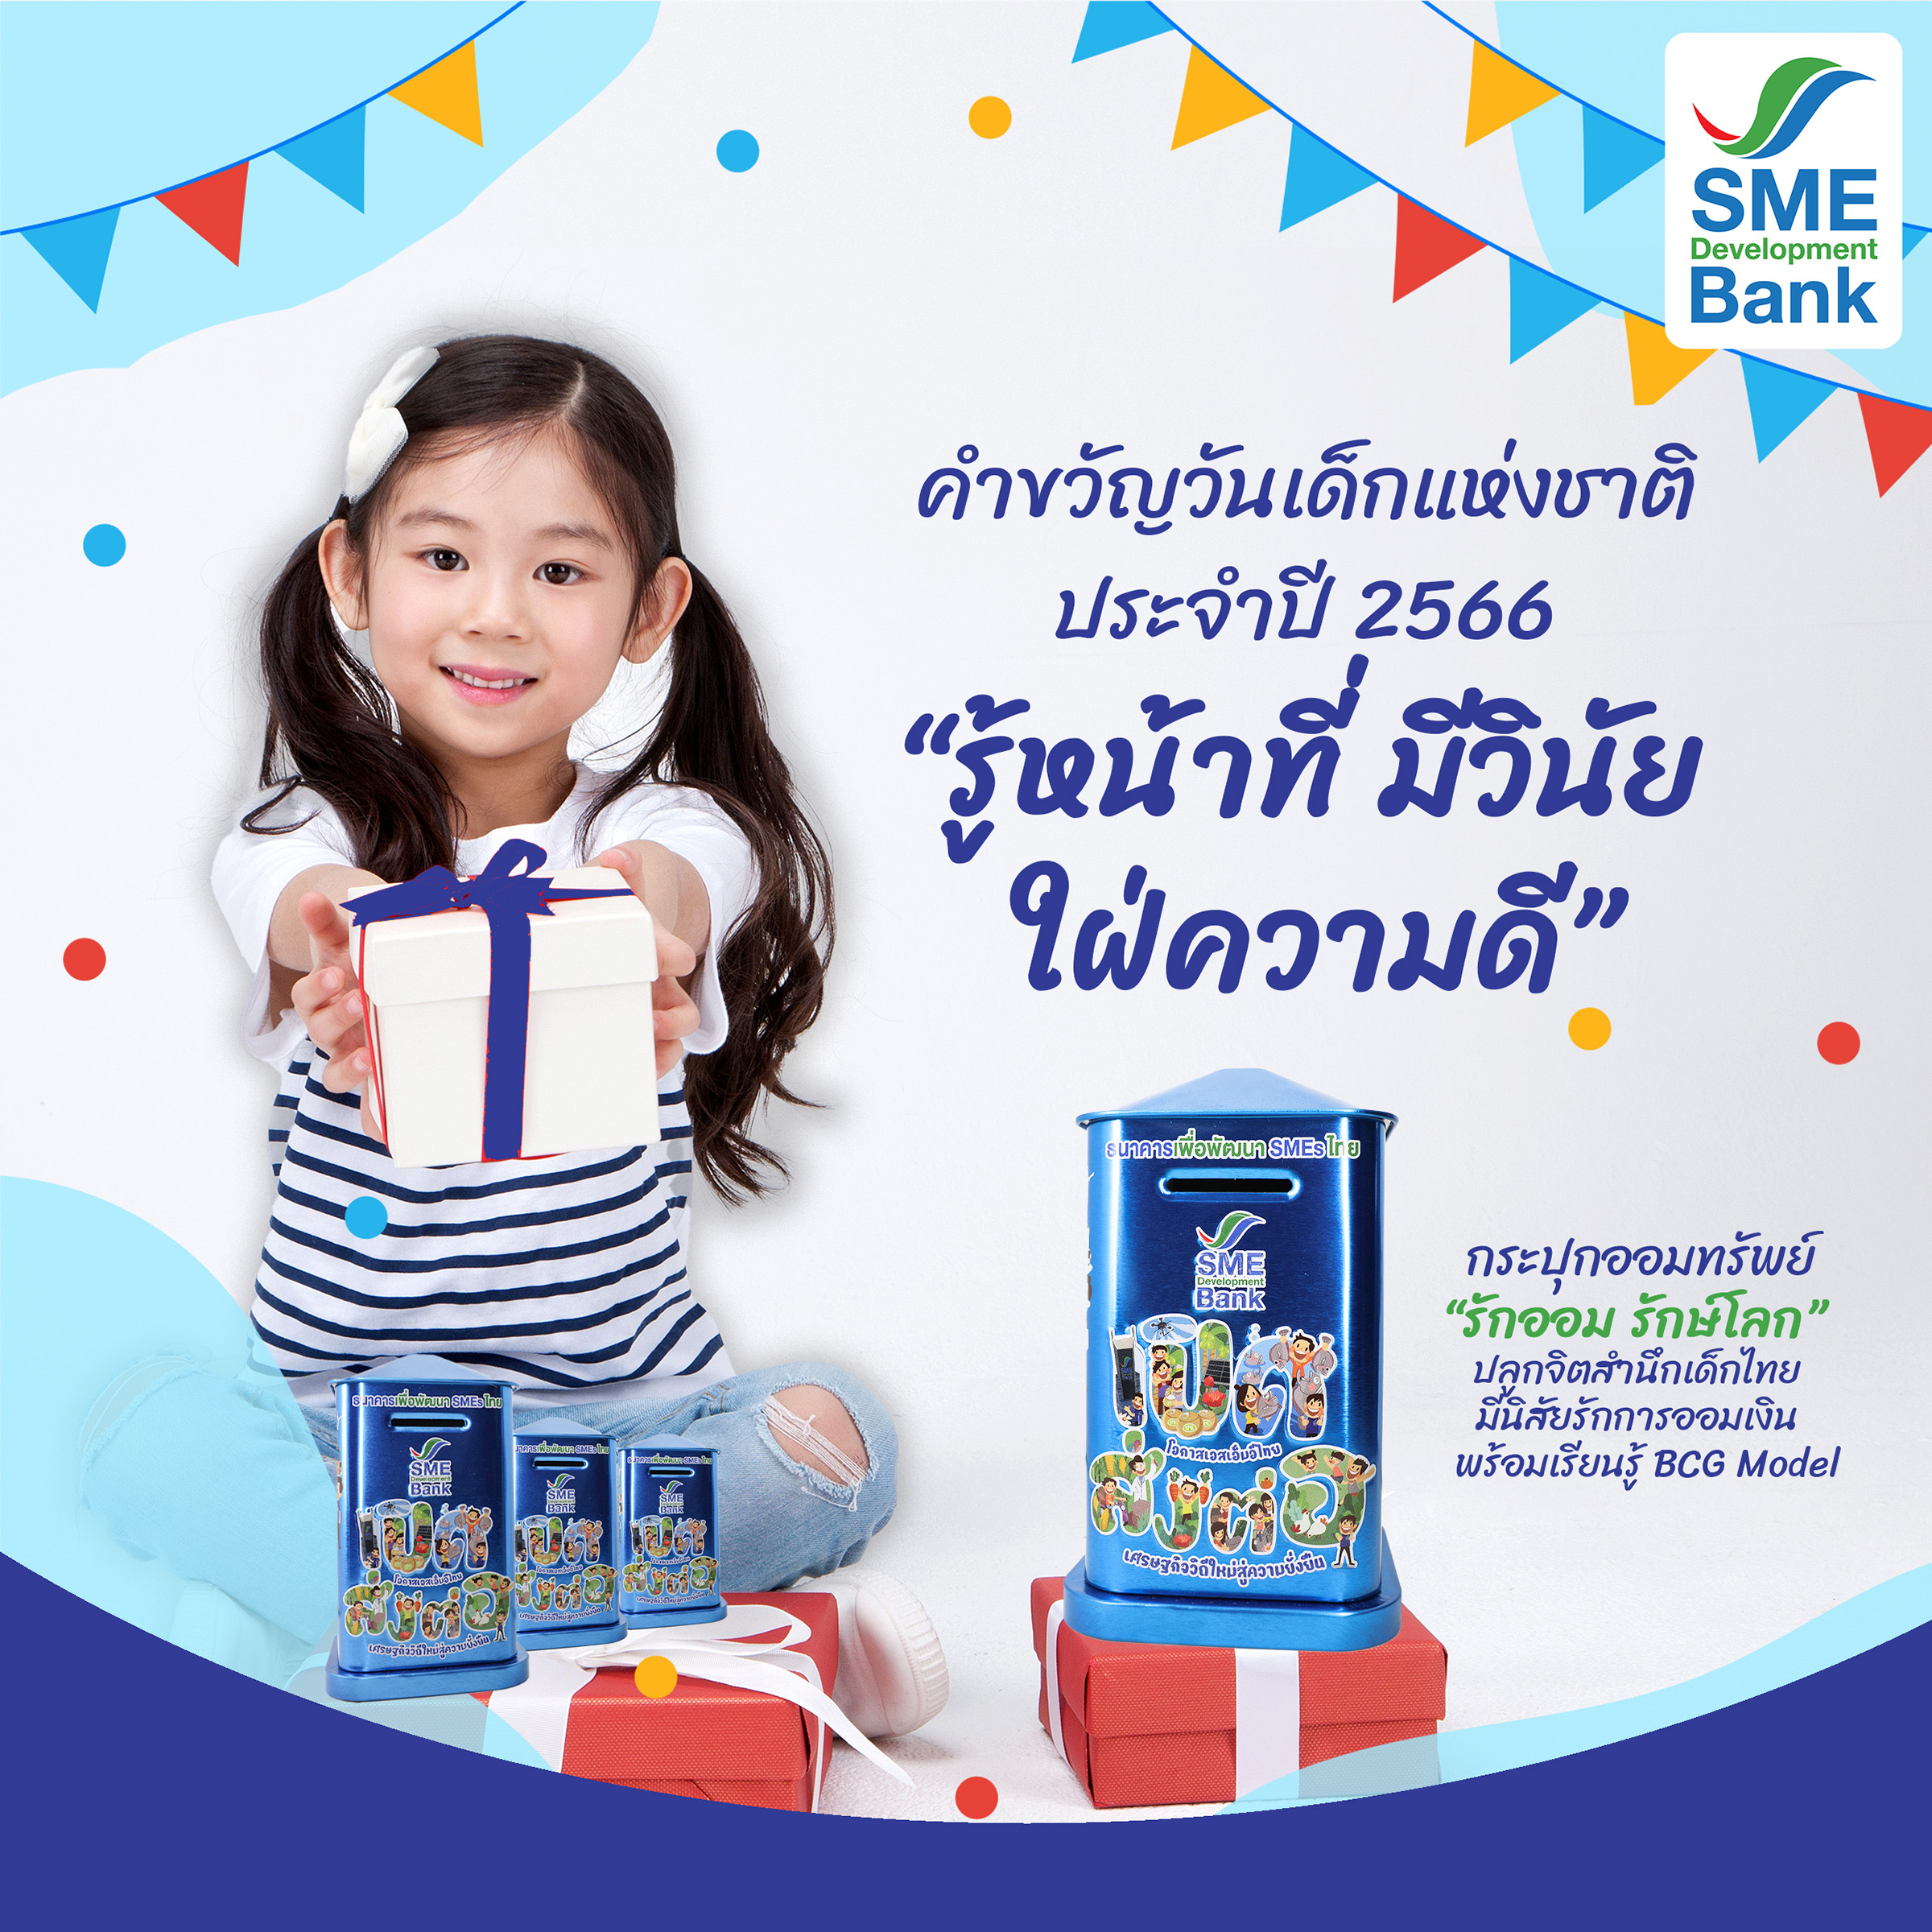 SME D Bank มอบกระปุกออมทรัพย์ ‘รักออม รักษ์โลก’ วันเด็กแห่งชาติ ปี 66